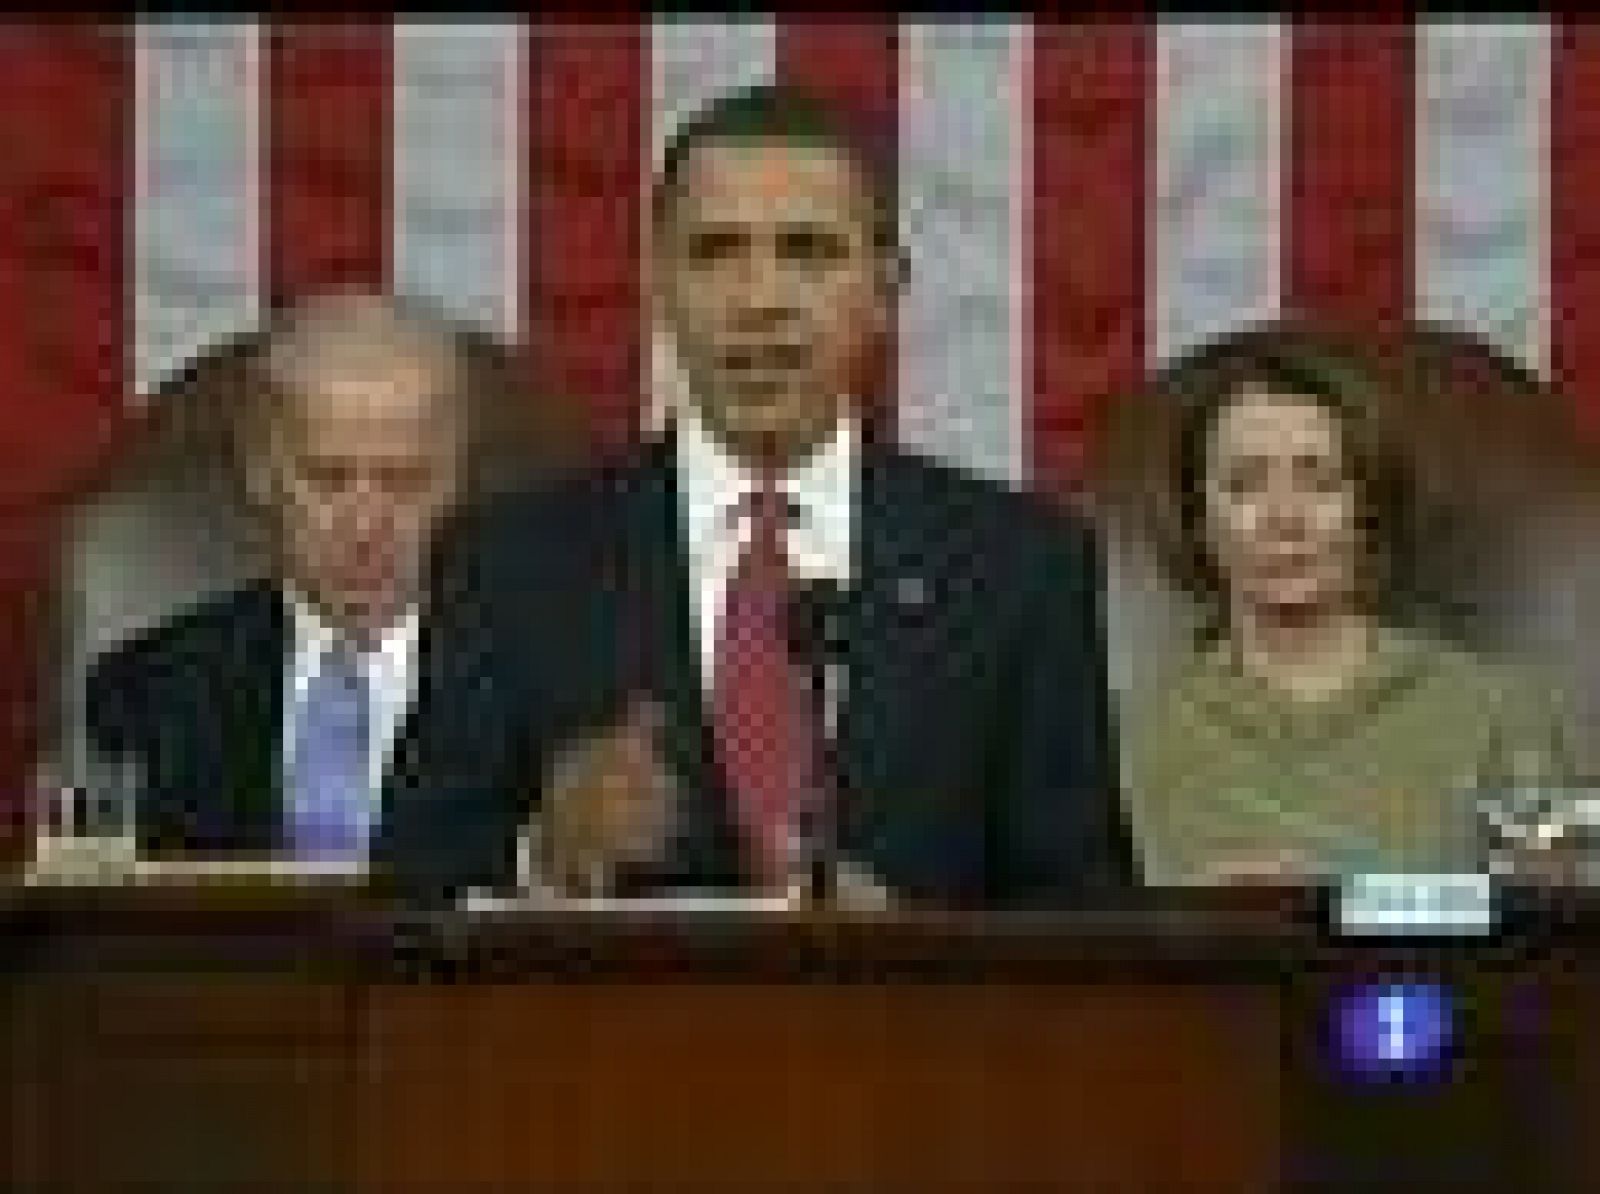 El presidente de Estados Unidos Barack Obama ha pronunciado un discurso centrado en la crisis en una sesión conjunta de la Cámara de Representantes y el Senado. Ha asegurado que el país va a salir fortalecido. (24/02/09) 